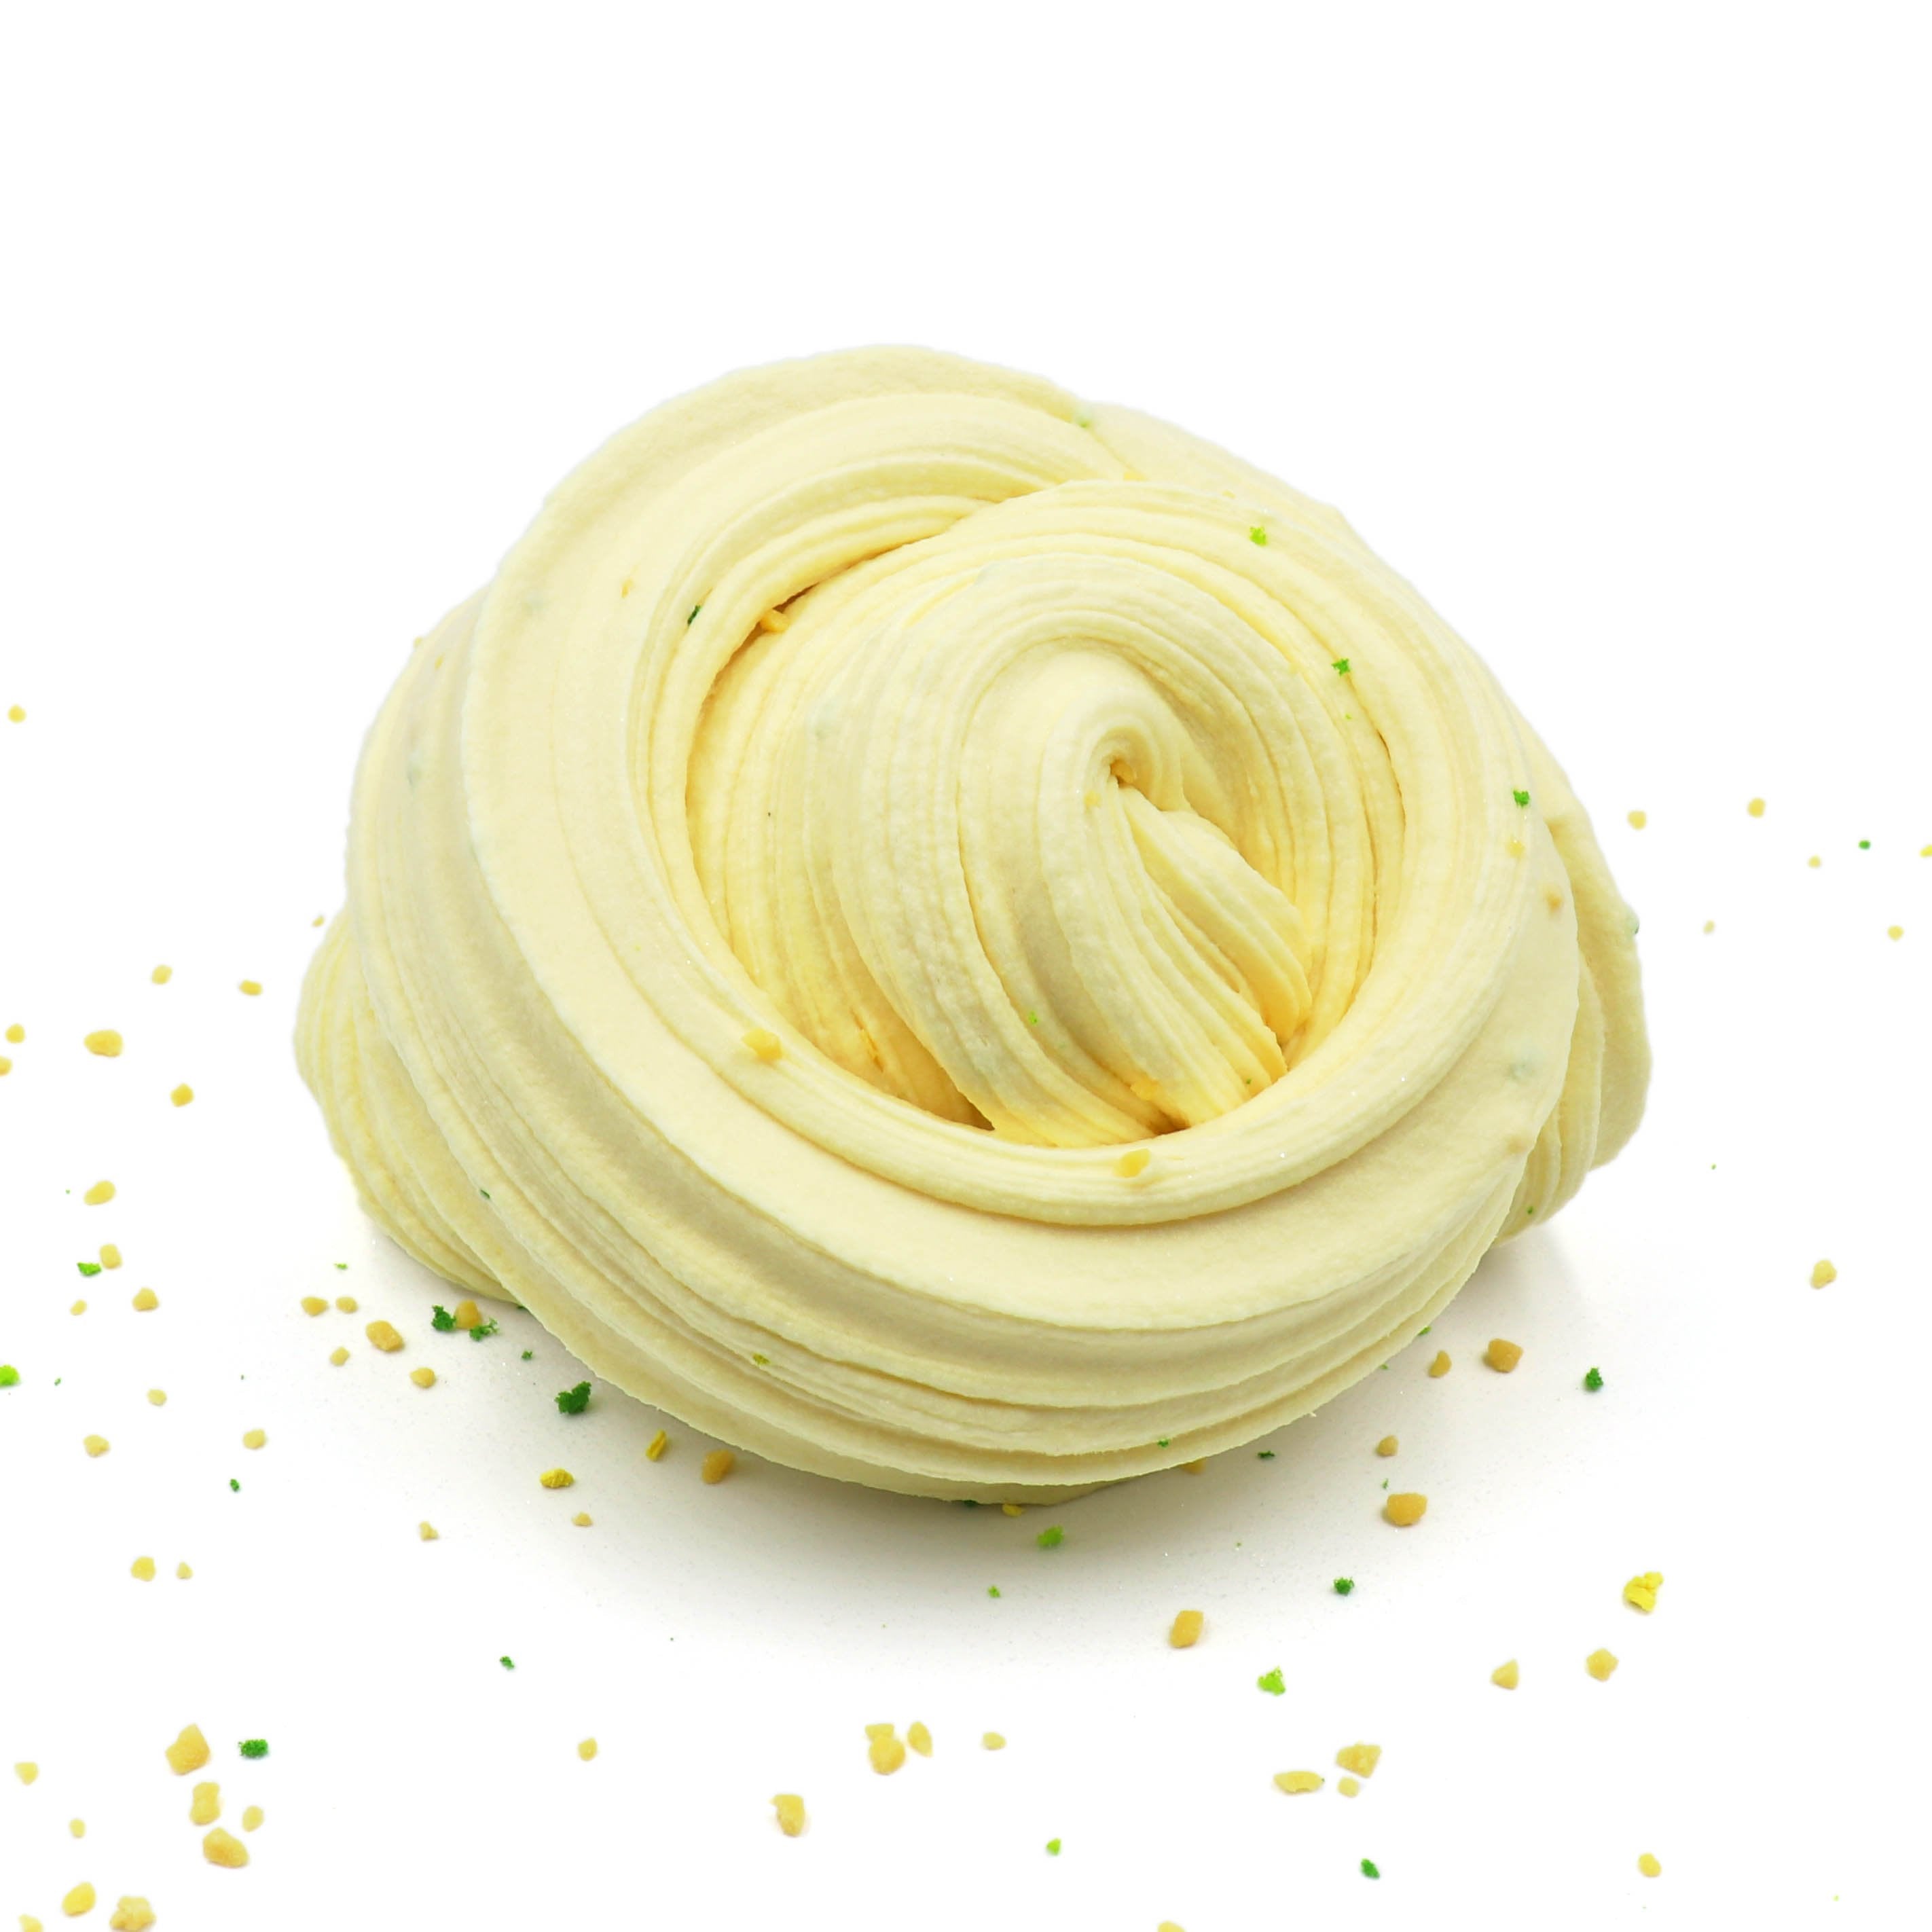 Rosemary Lemon Sugar Cookie Soft Sprinkles Beige Creamy Butter Slime Fantasies Shop Swirl Cute